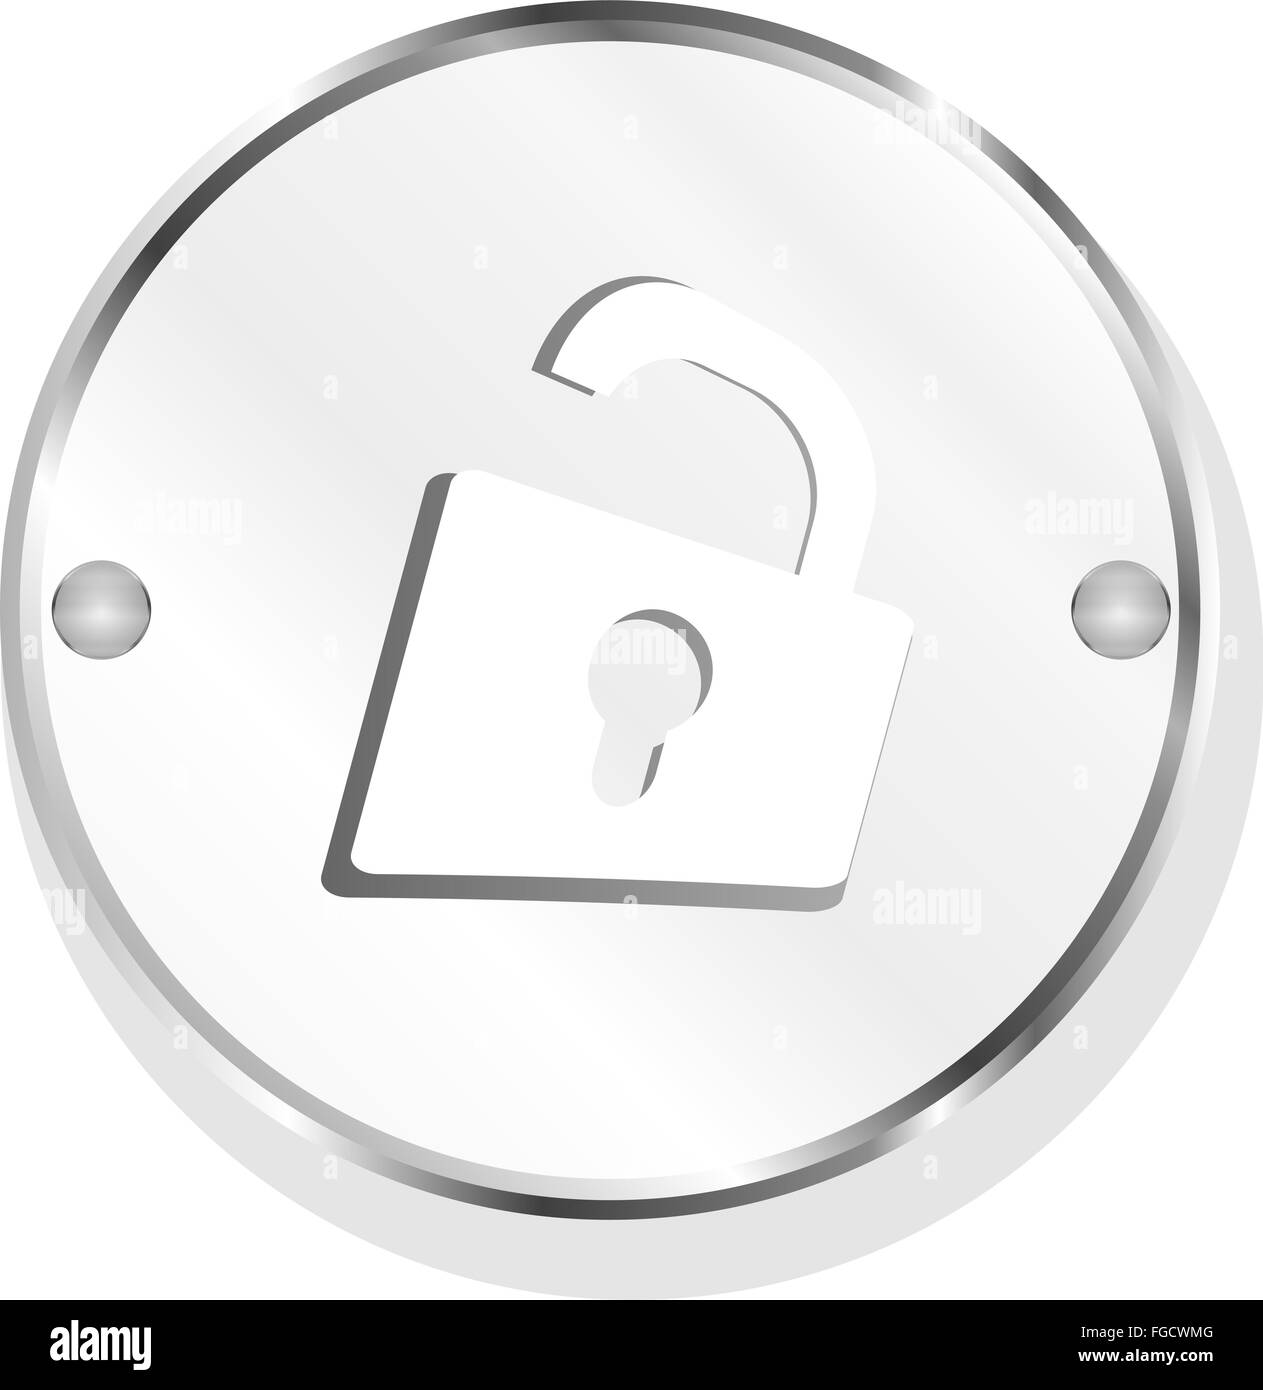 Padlock icon web sign isolated on white Stock Photo - Alamy